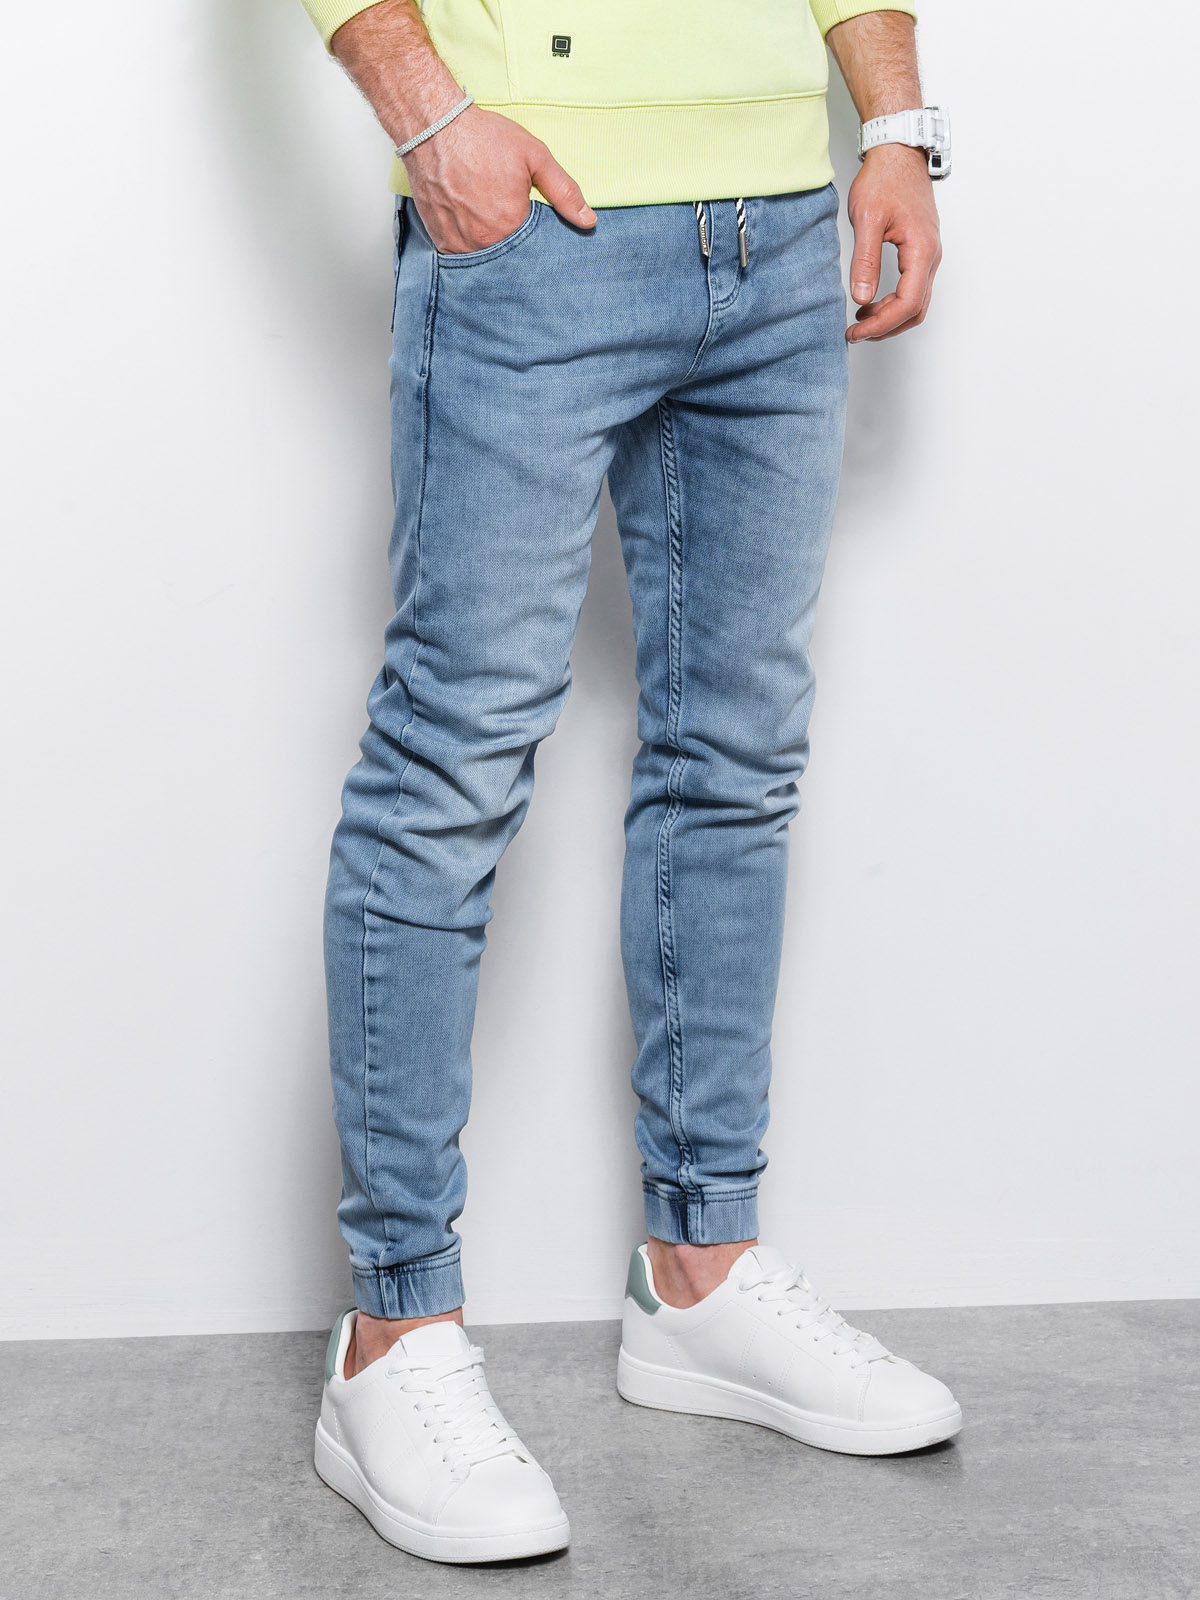 Men's jeans joggers P907 - light blue | MODONE wholesale - Clothing For Men